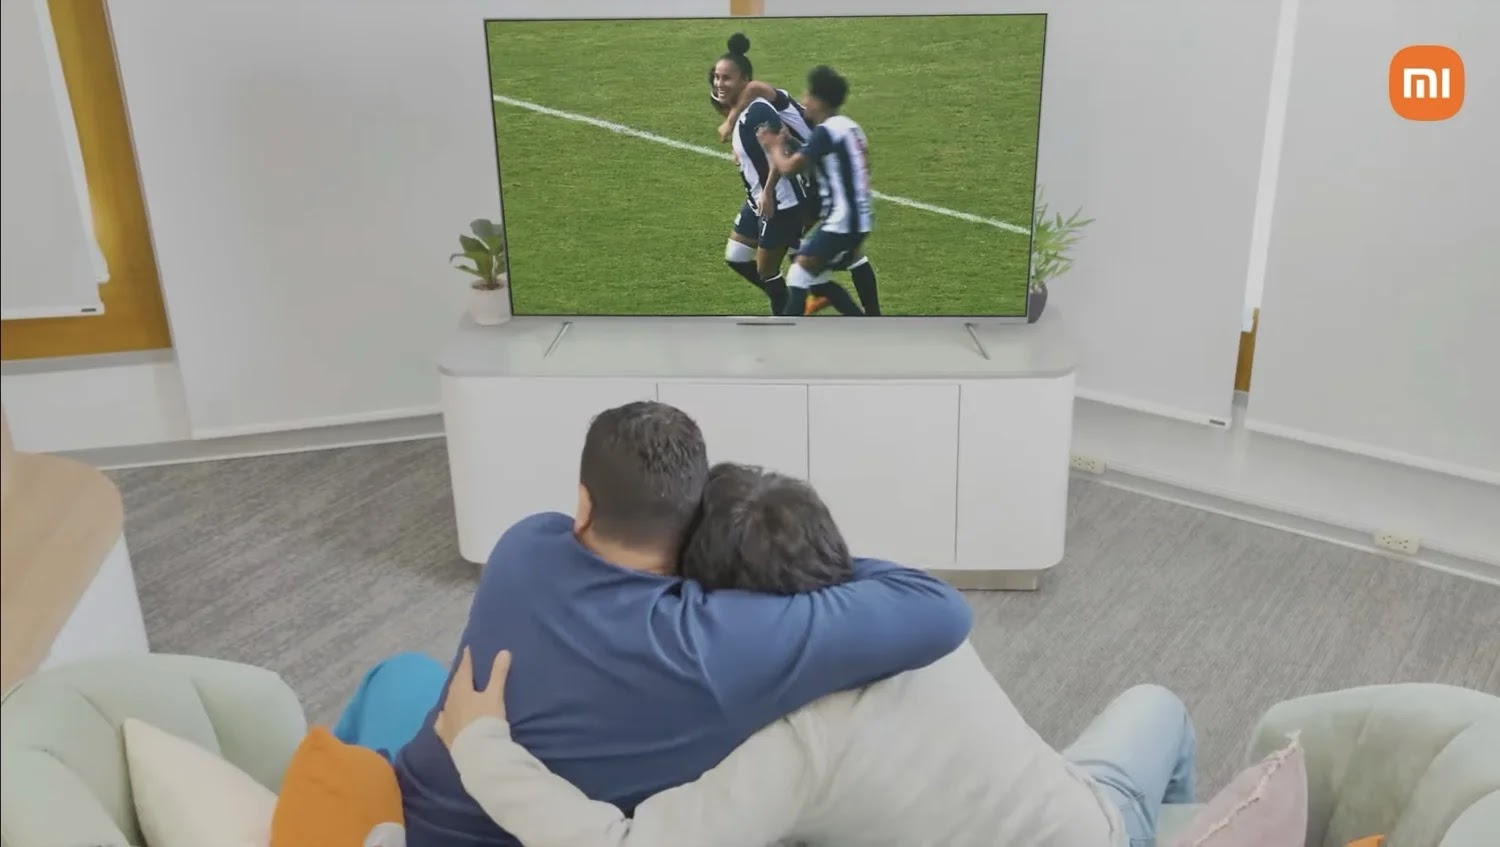 La TV de Xiaomi es ideal para ver deportes